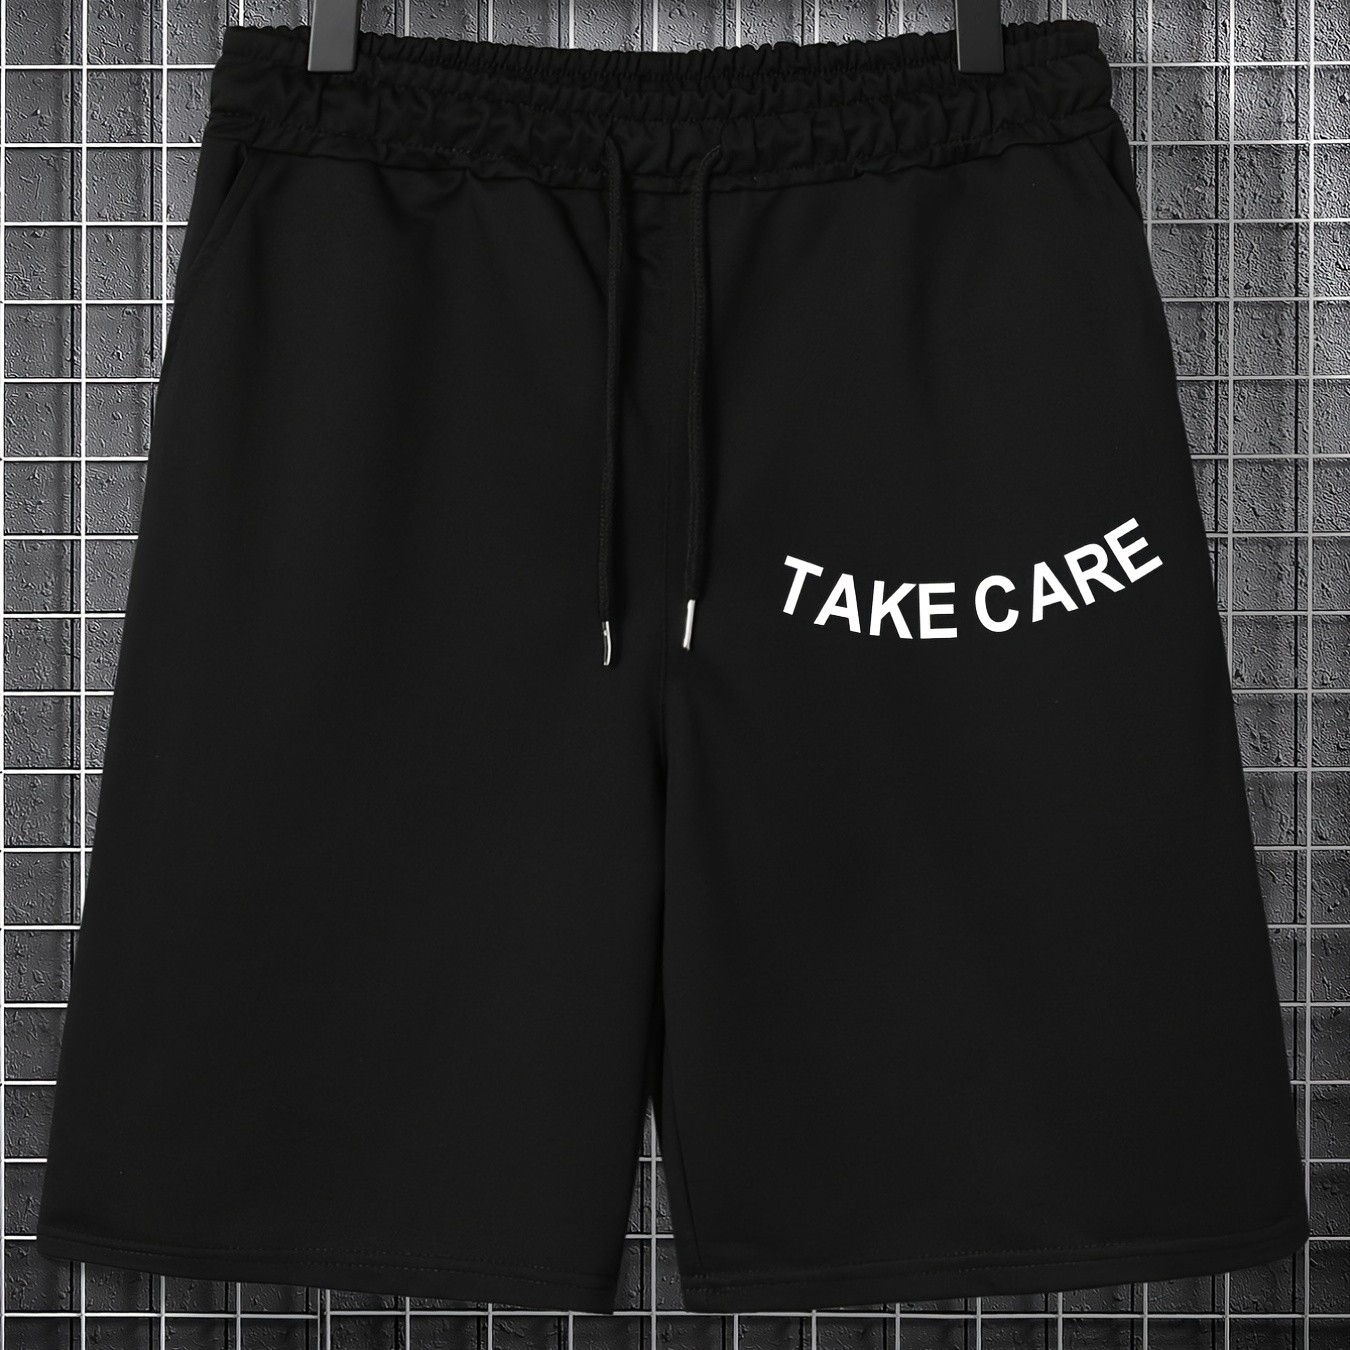 

Plus Size Women Men's Casual Elastic Drawstring Take Care Print Sports Short Pants, Oversized Shorts